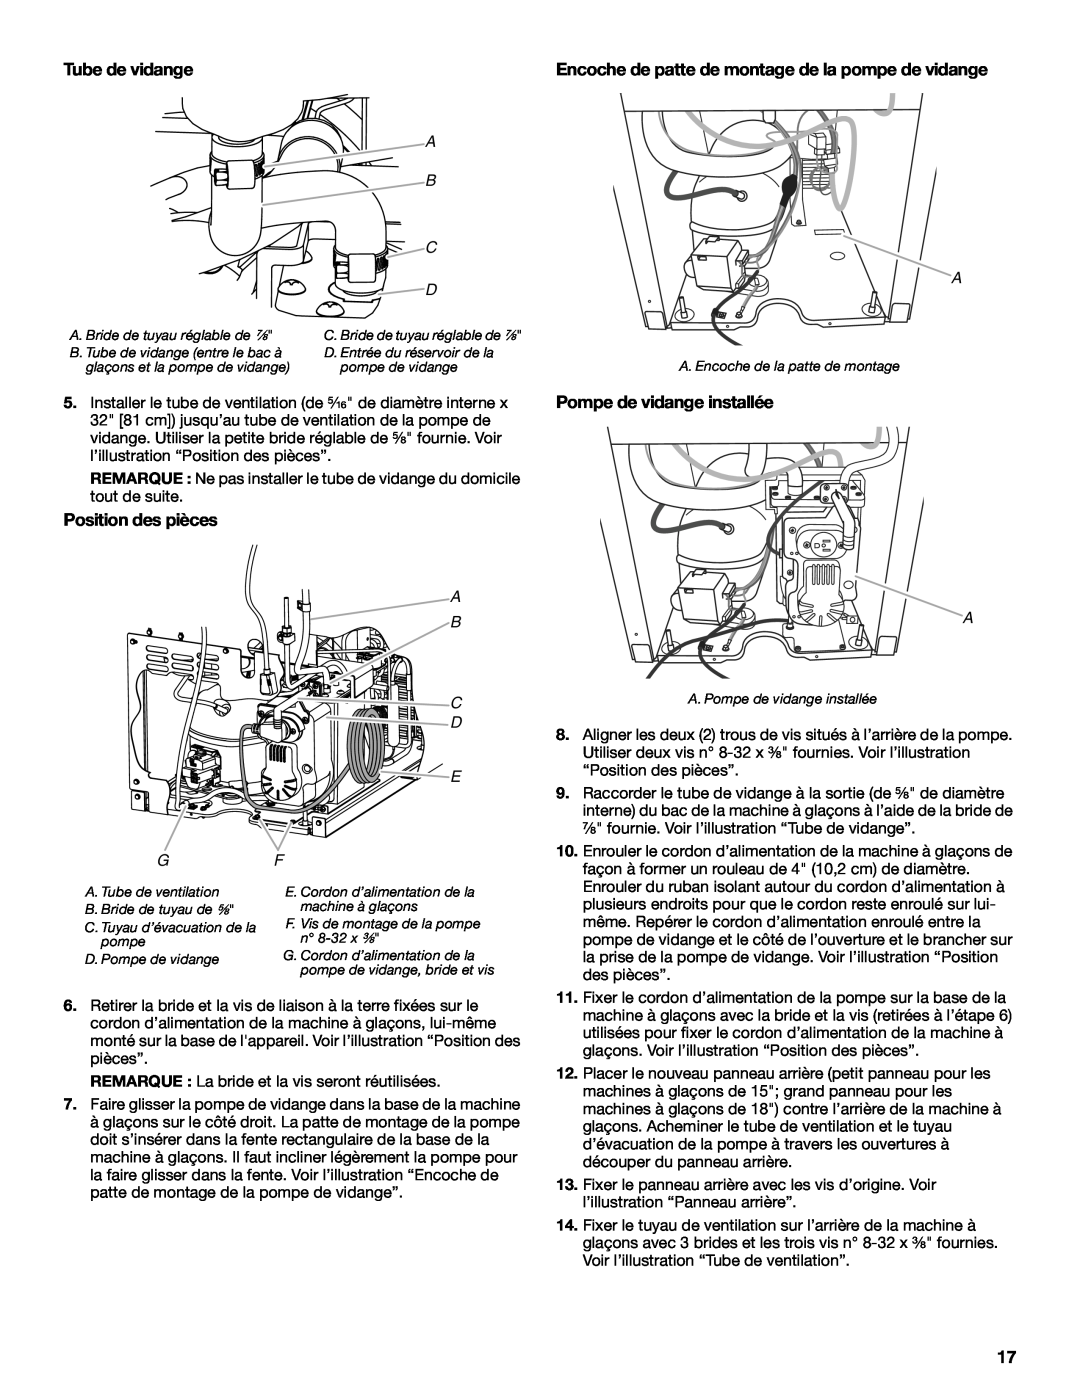 Whirlpool W10541636A important safety instructions Position des pièces, Tube de vidange, Pompe de vidange installée 